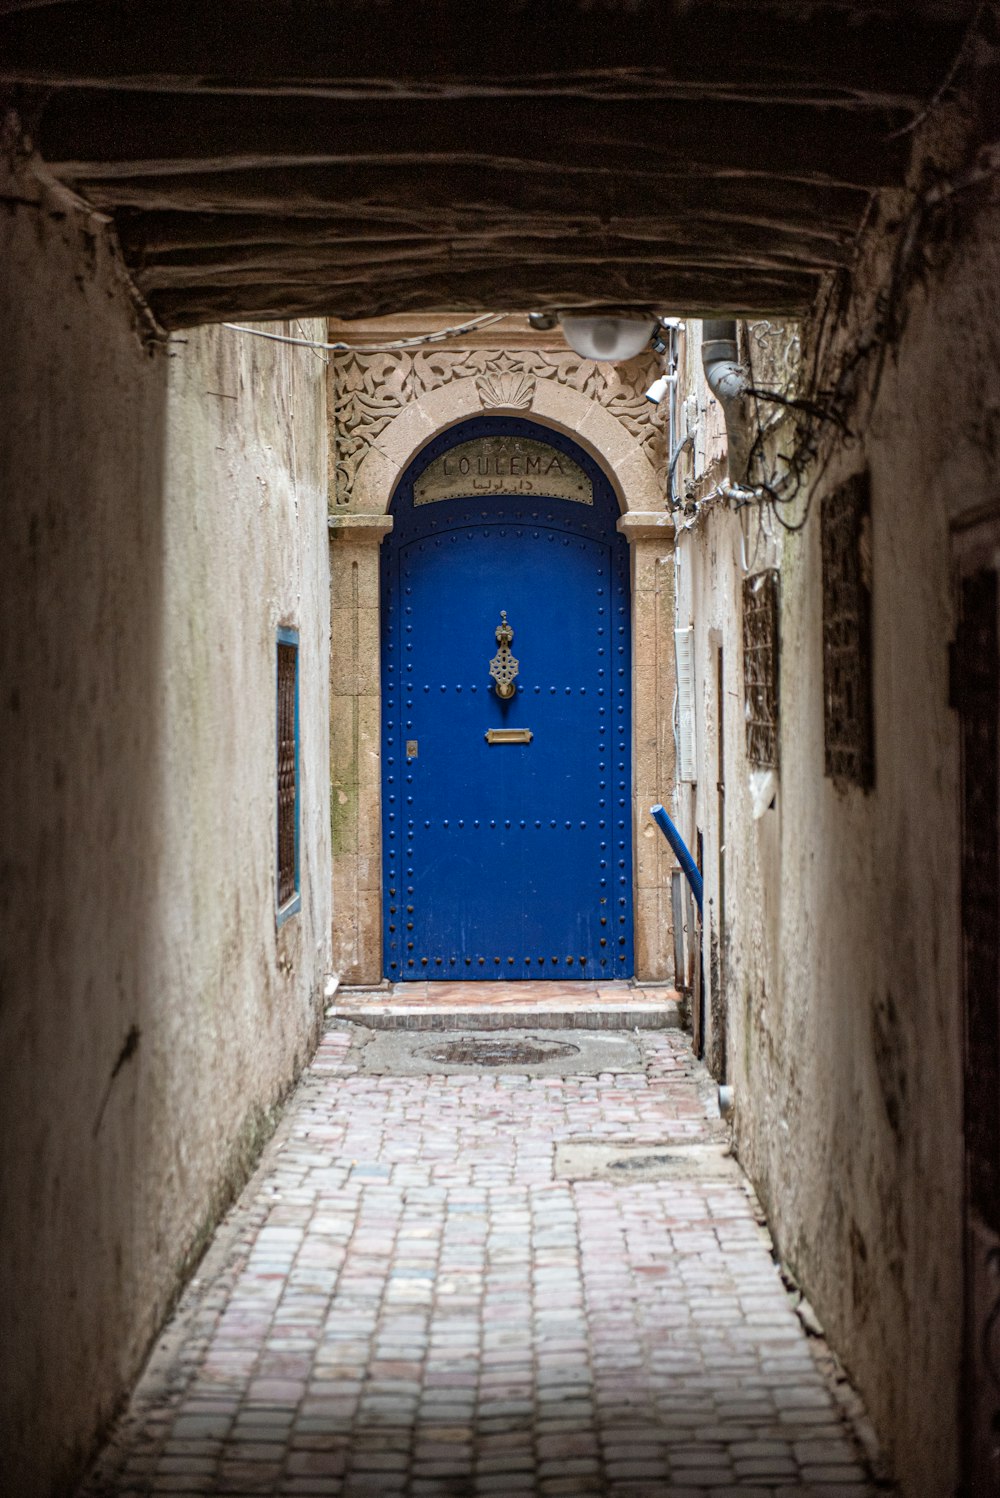 a blue door in a narrow alley way